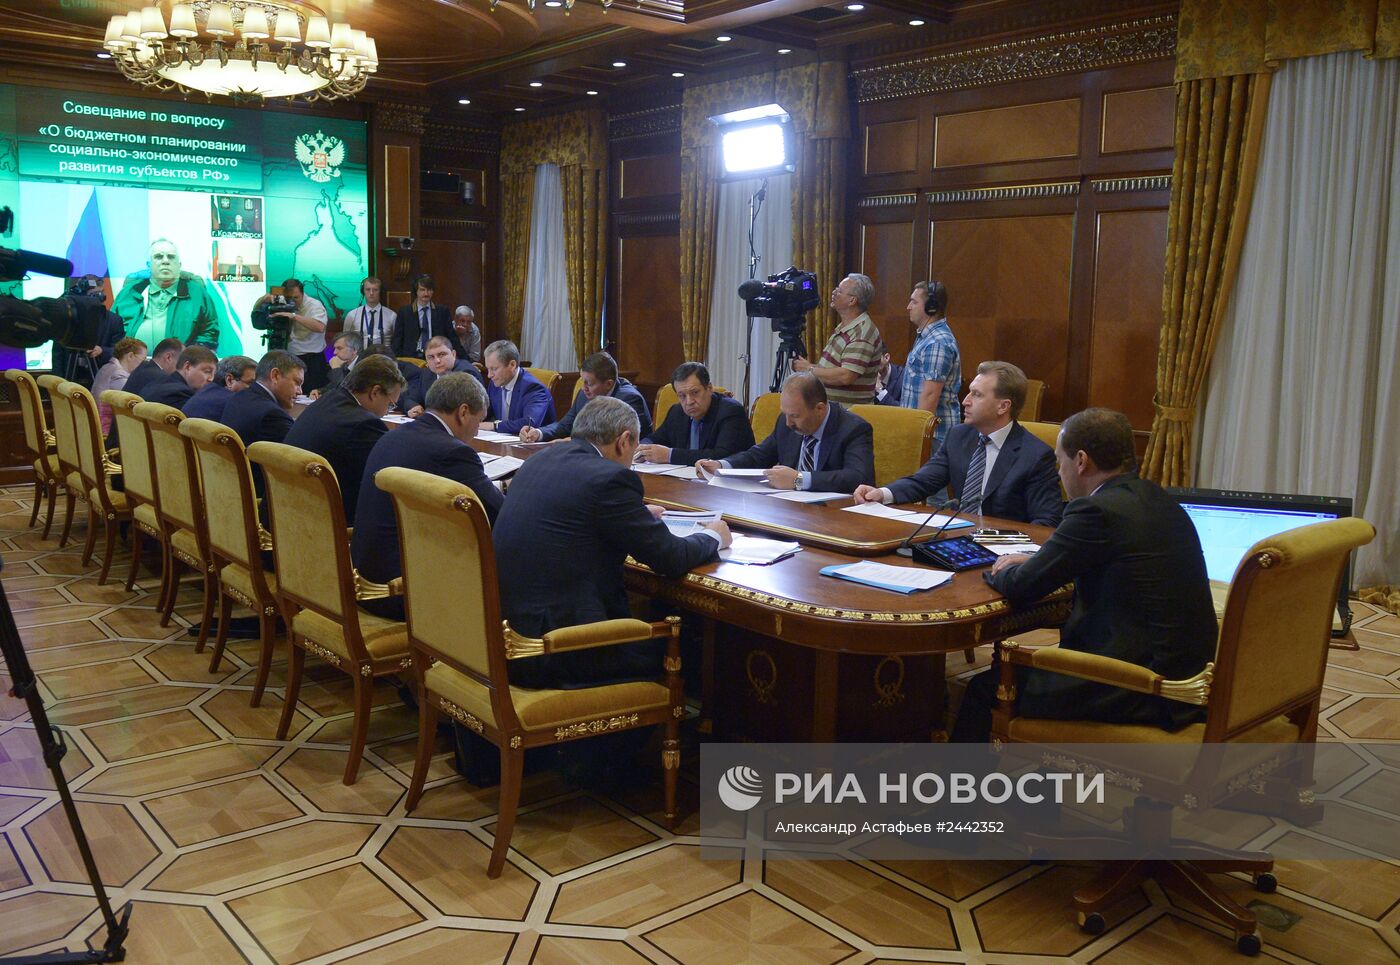 Д.Медведев проводит совещание "О бюджетном планировании социально-экономического развития субъектов РФ"